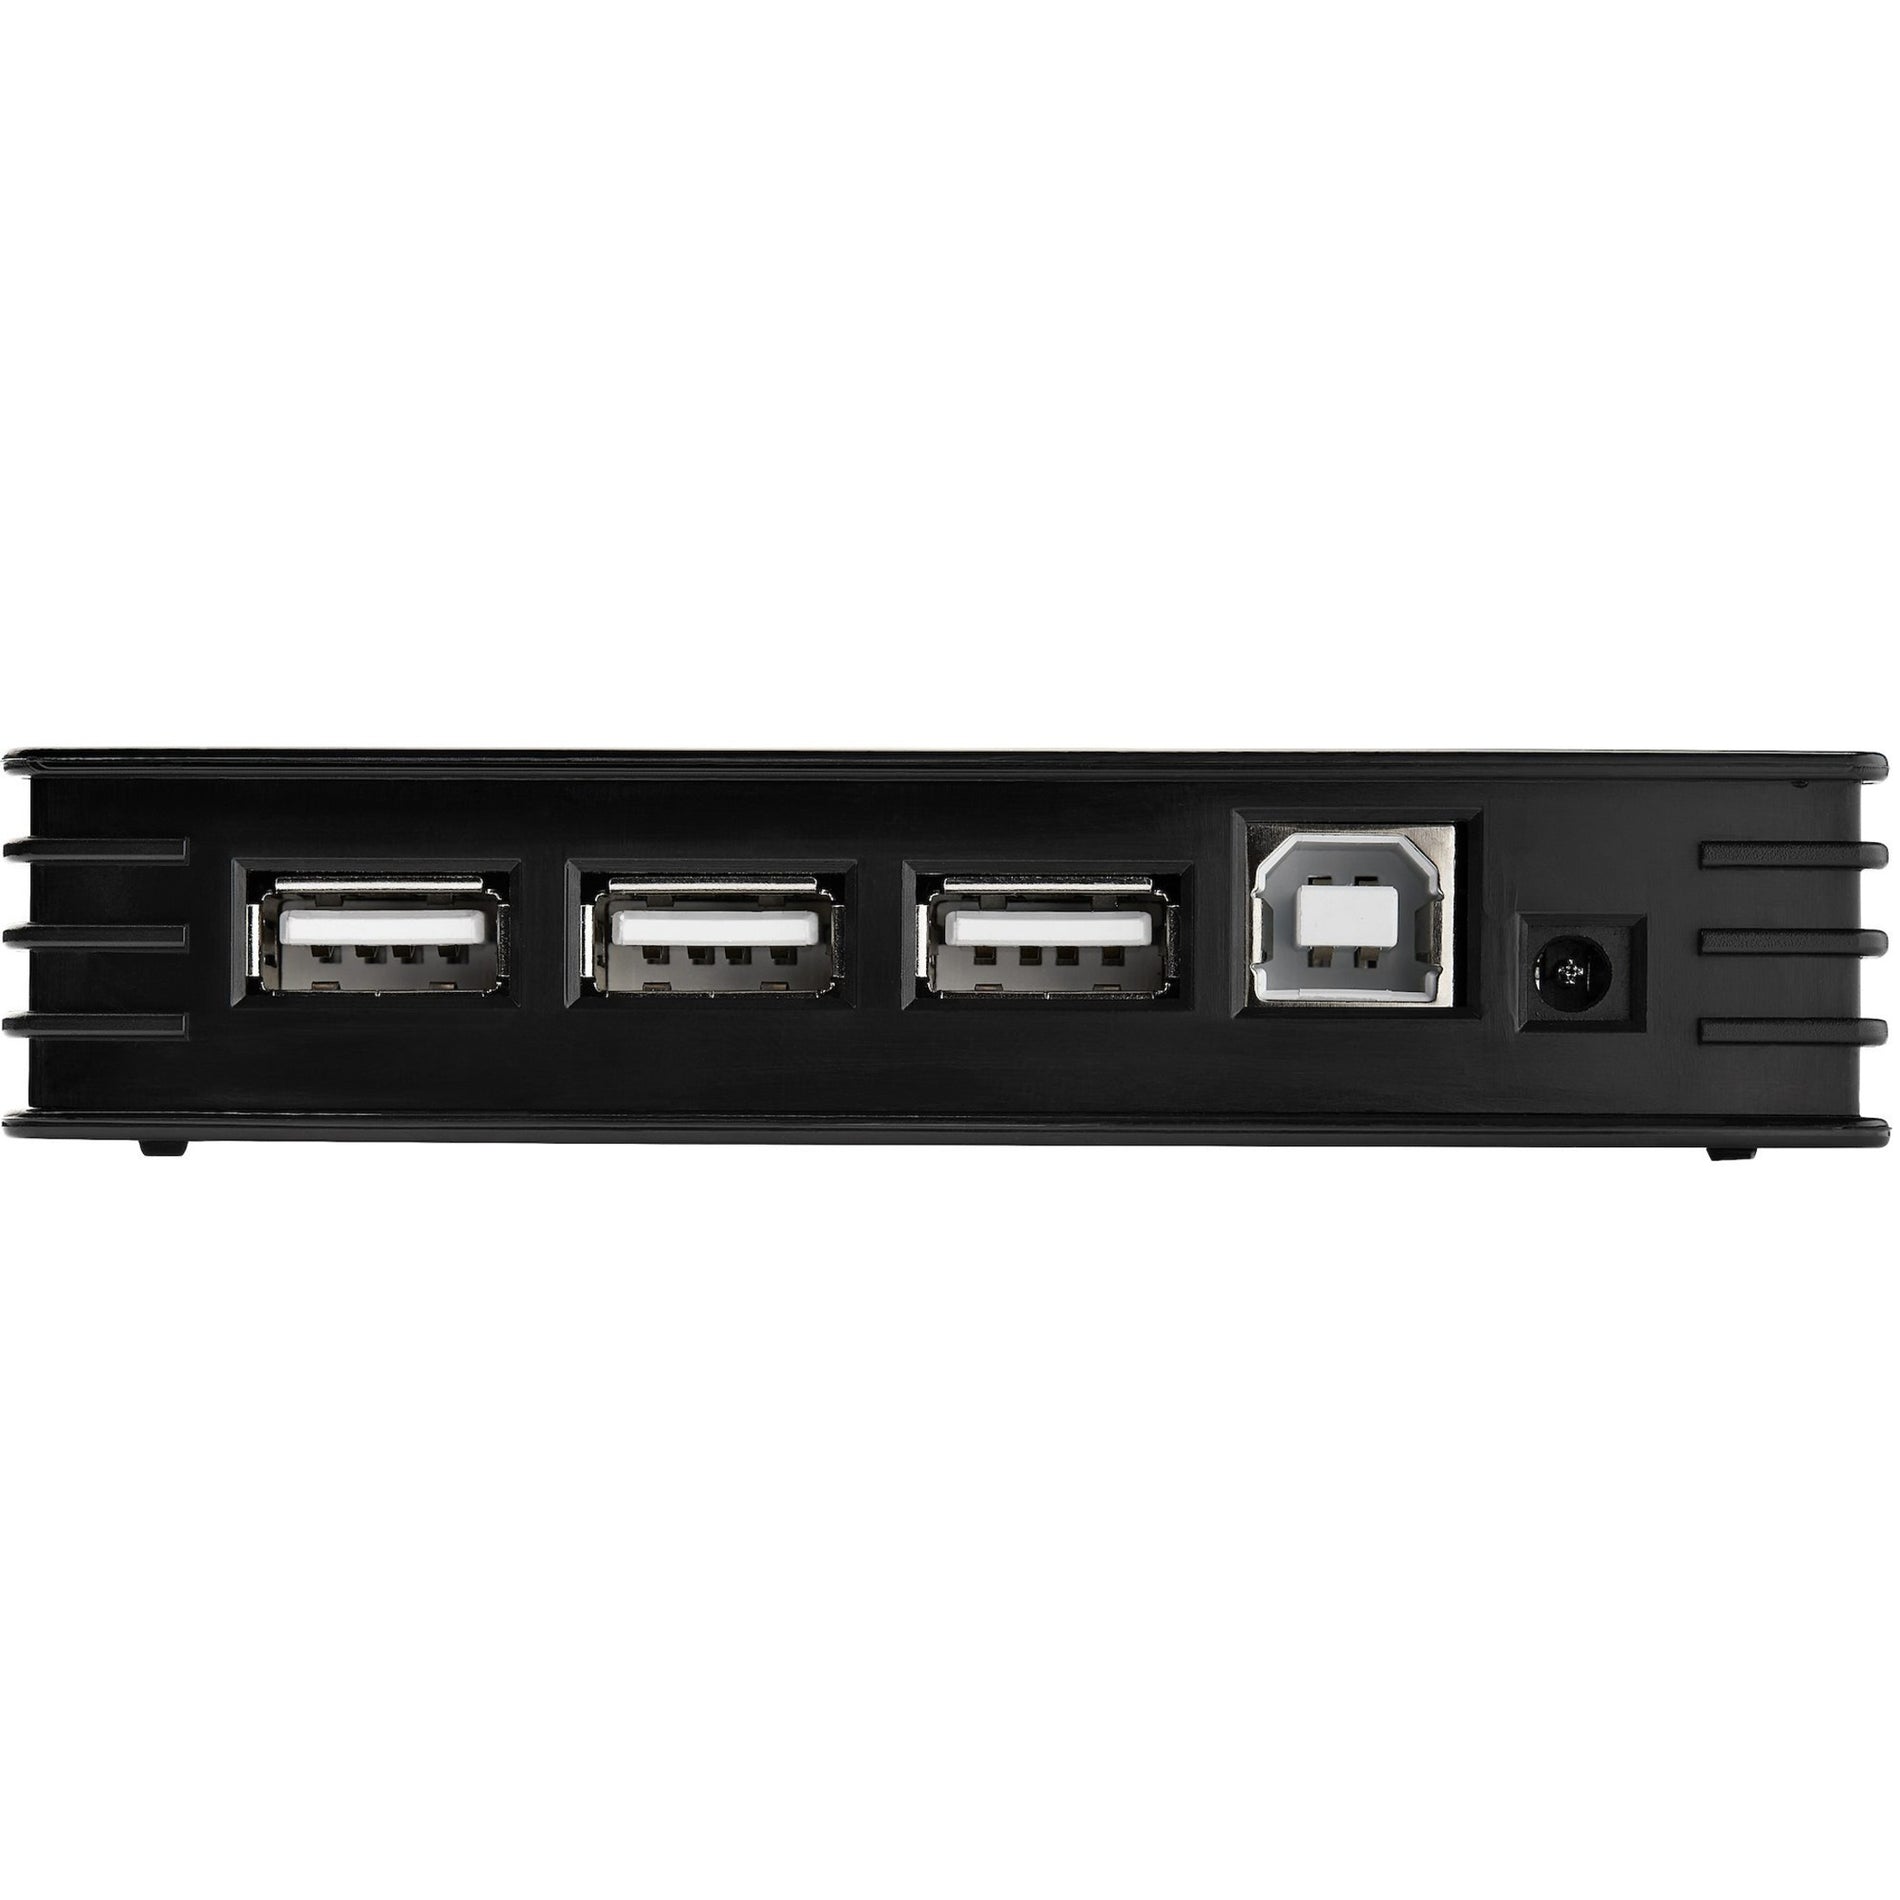 星恒科技 ST7202USB 7 口 USB 2.0 集线器 - 高速 USB，扩展您的连接 星恒科技 恒科技